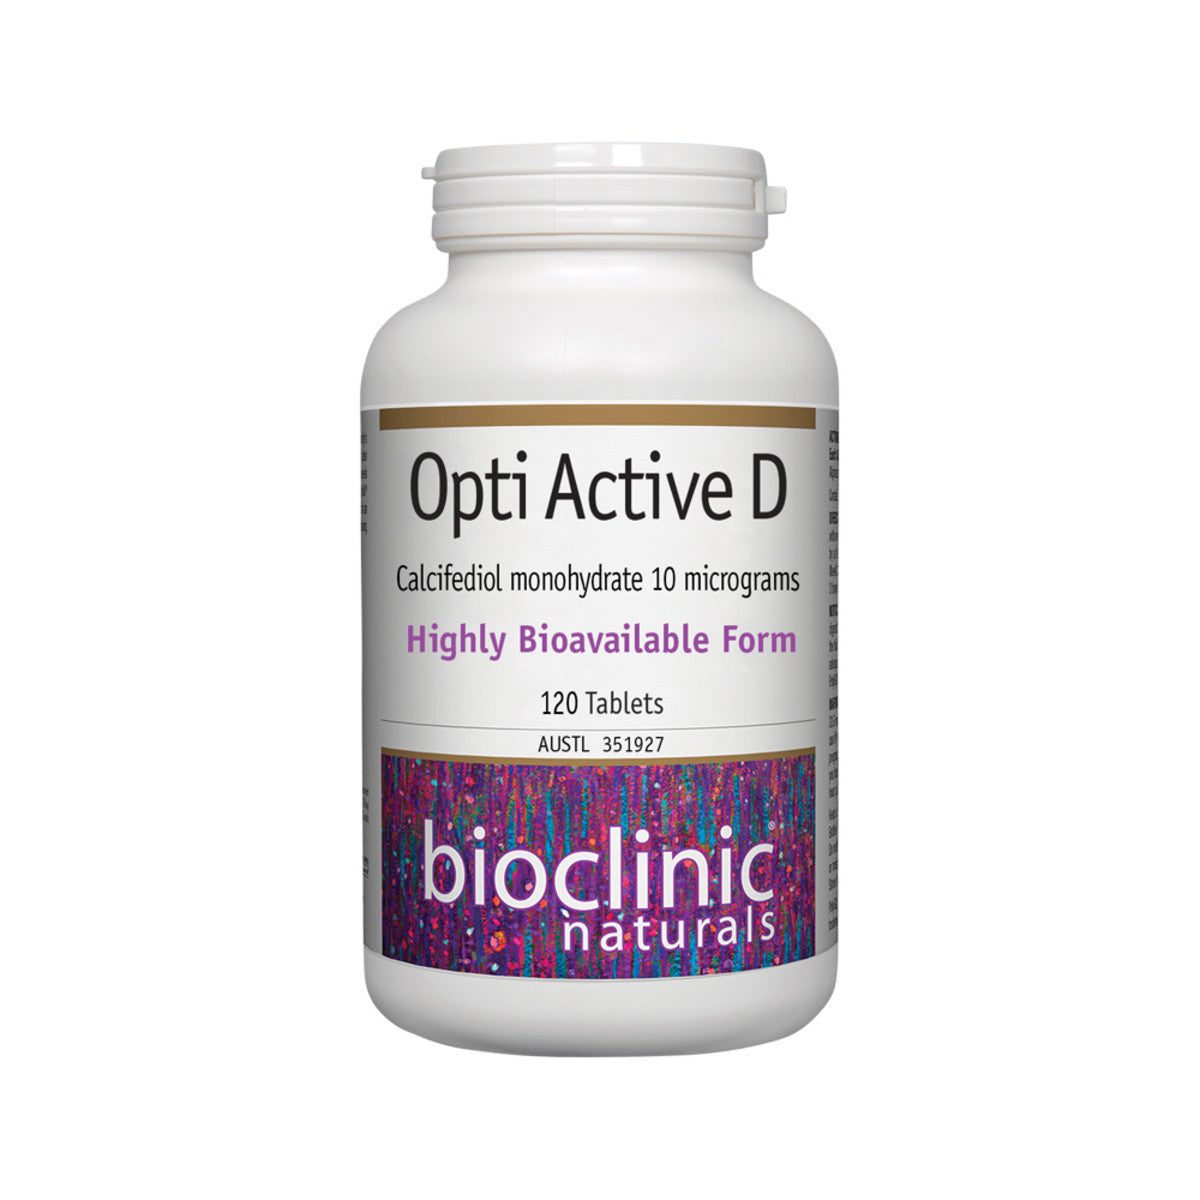 Bioclinic Naturals - Opti Active D